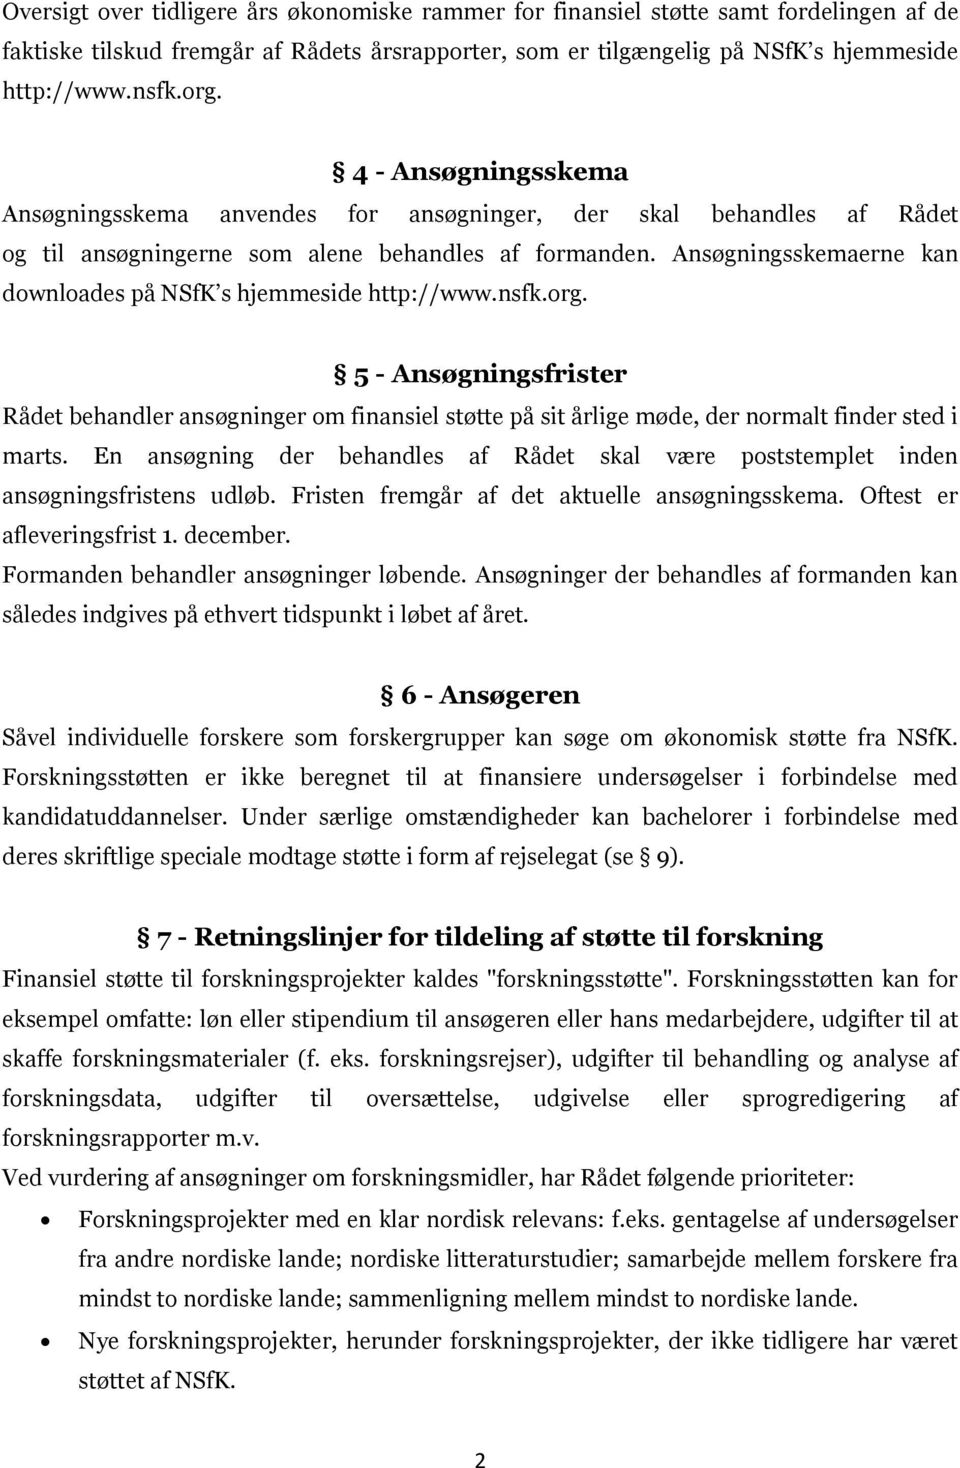 Ansøgningsskemaerne kan downloades på NSfK s hjemmeside http://www.nsfk.org. 5 - Ansøgningsfrister Rådet behandler ansøgninger om finansiel støtte på sit årlige møde, der normalt finder sted i marts.